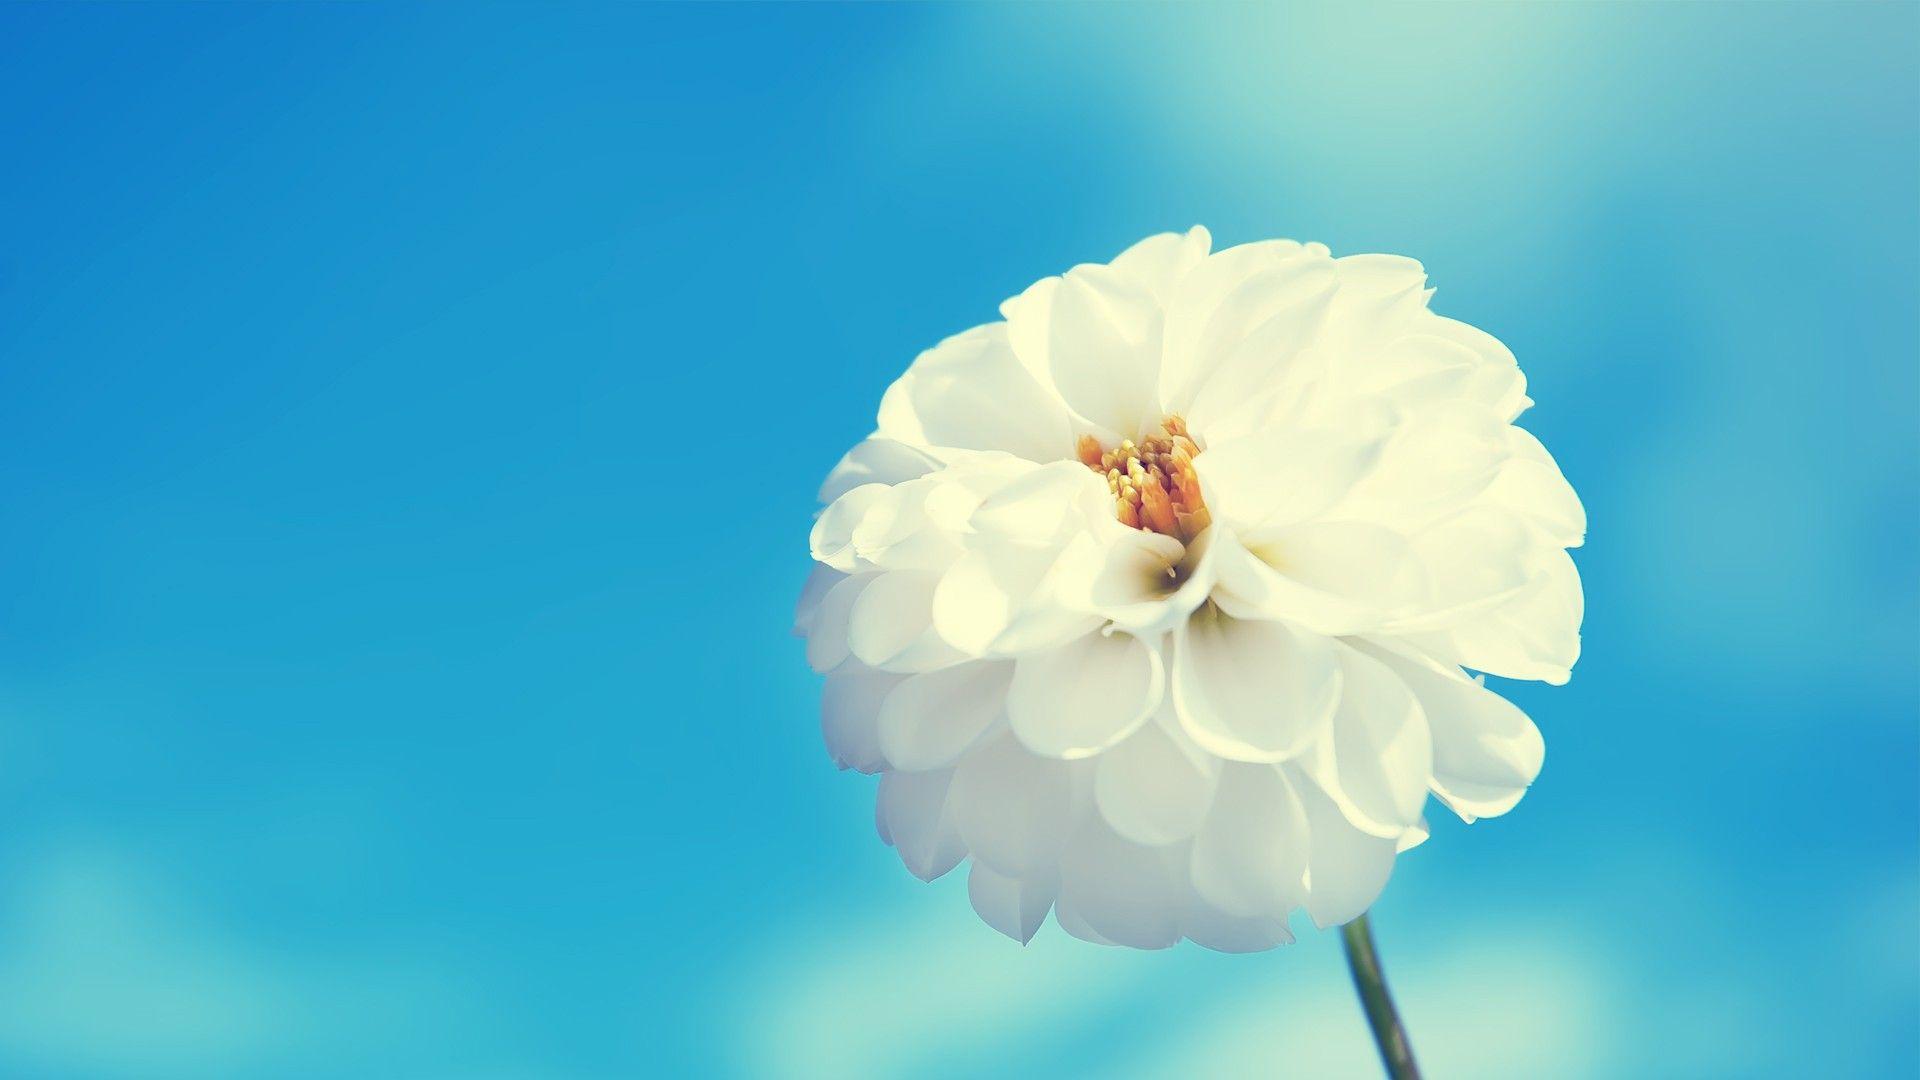 Hoa trắng HD với sắc trắng tinh khôi và đẹp tự nhiên sẽ làm cho không gian của bạn trở nên thật tươi mới và thanh thoát. Bạn sẽ được thoải mái khi được ngắm nhìn những bông hoa trắng tinh khôi và cảm nhận được sự thanh thản, sự tĩnh lặng.